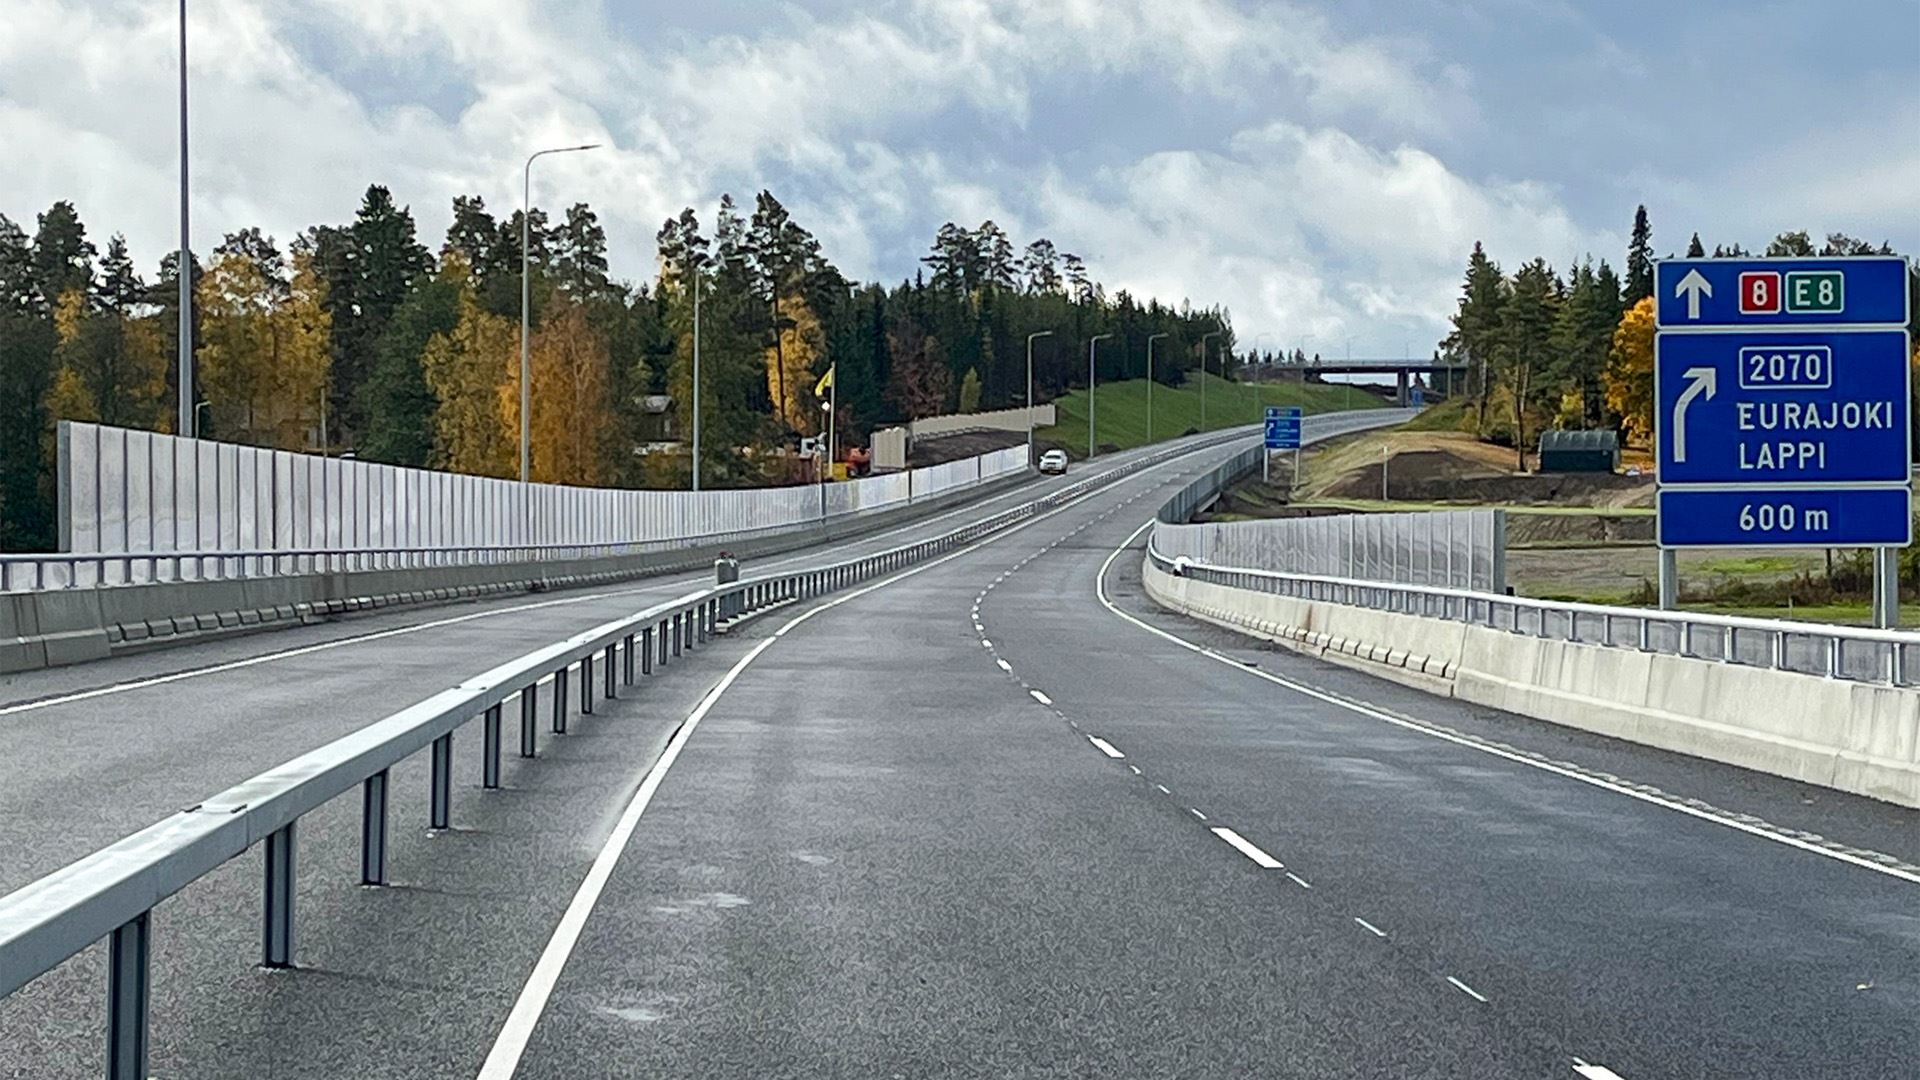 2010_Auto- ja tietekniikan kehittyminen on parantanut liikenneturvallisuutta 2010-luvulla_Väylävirasto.jpg